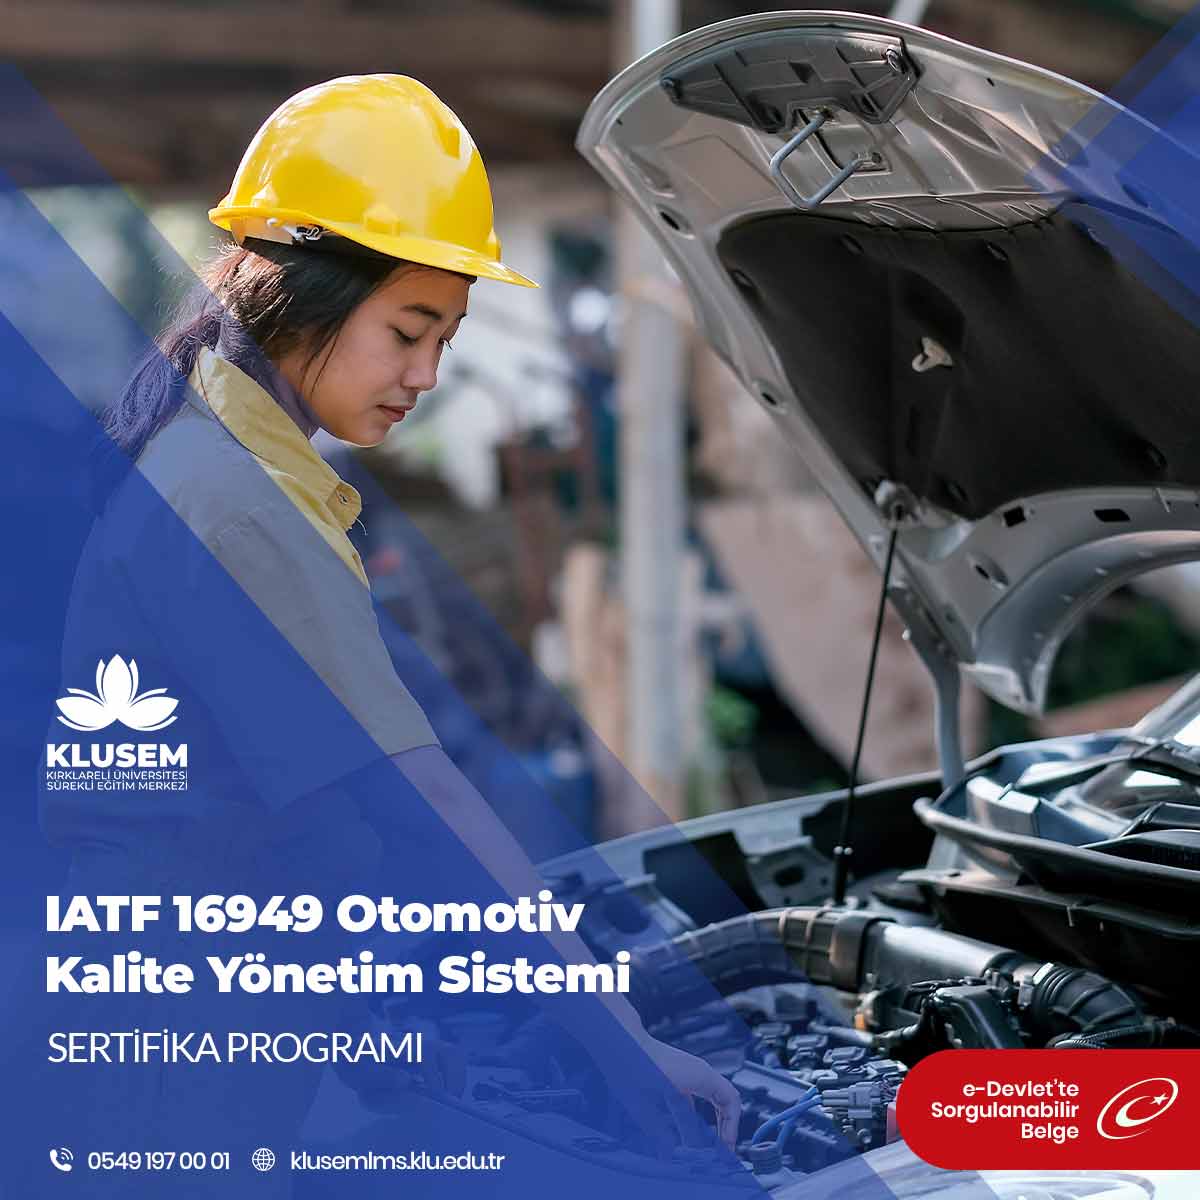 IATF 16949’a tasarlarken, üretirken, geliştirirken, kurarken / bakım yaparken ihtiyaç duyulmakta ve bu konularda otomotiv sektörüne fayda sağlamaktadır.